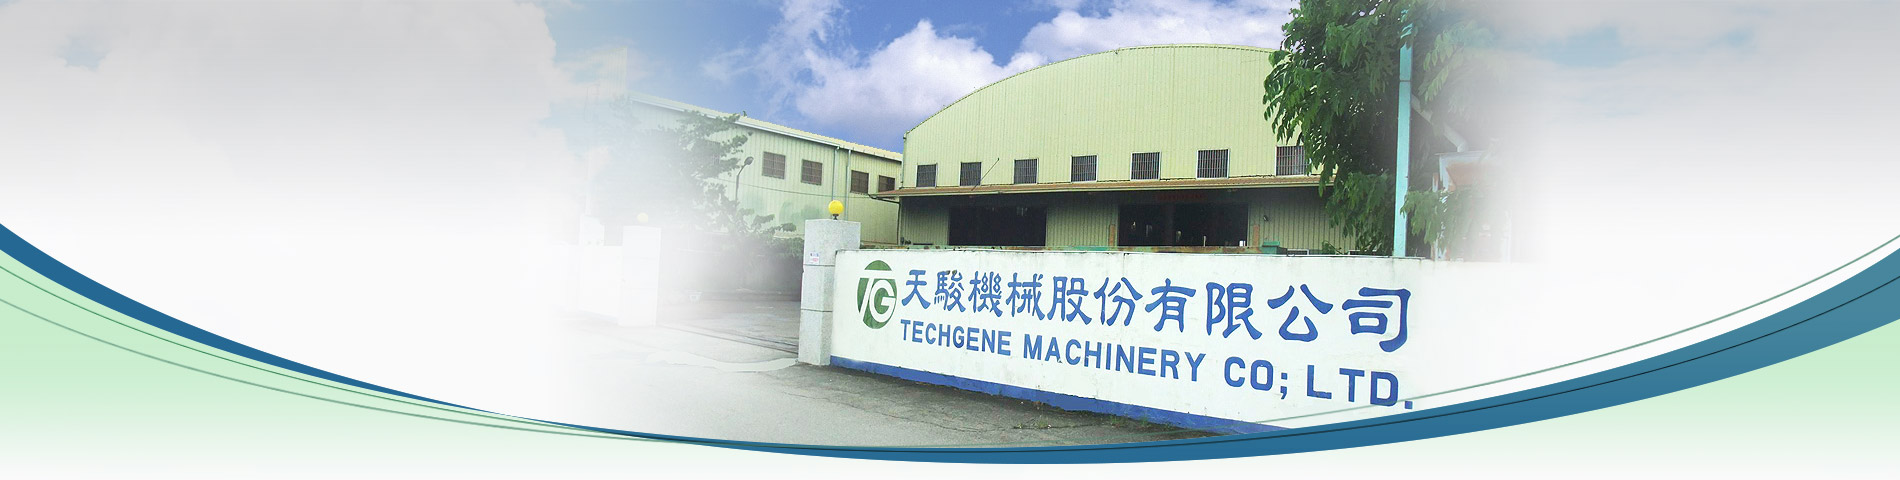 Ο ειδικός των μηχανημάτων συσκευασίας στην Ταϊβάν